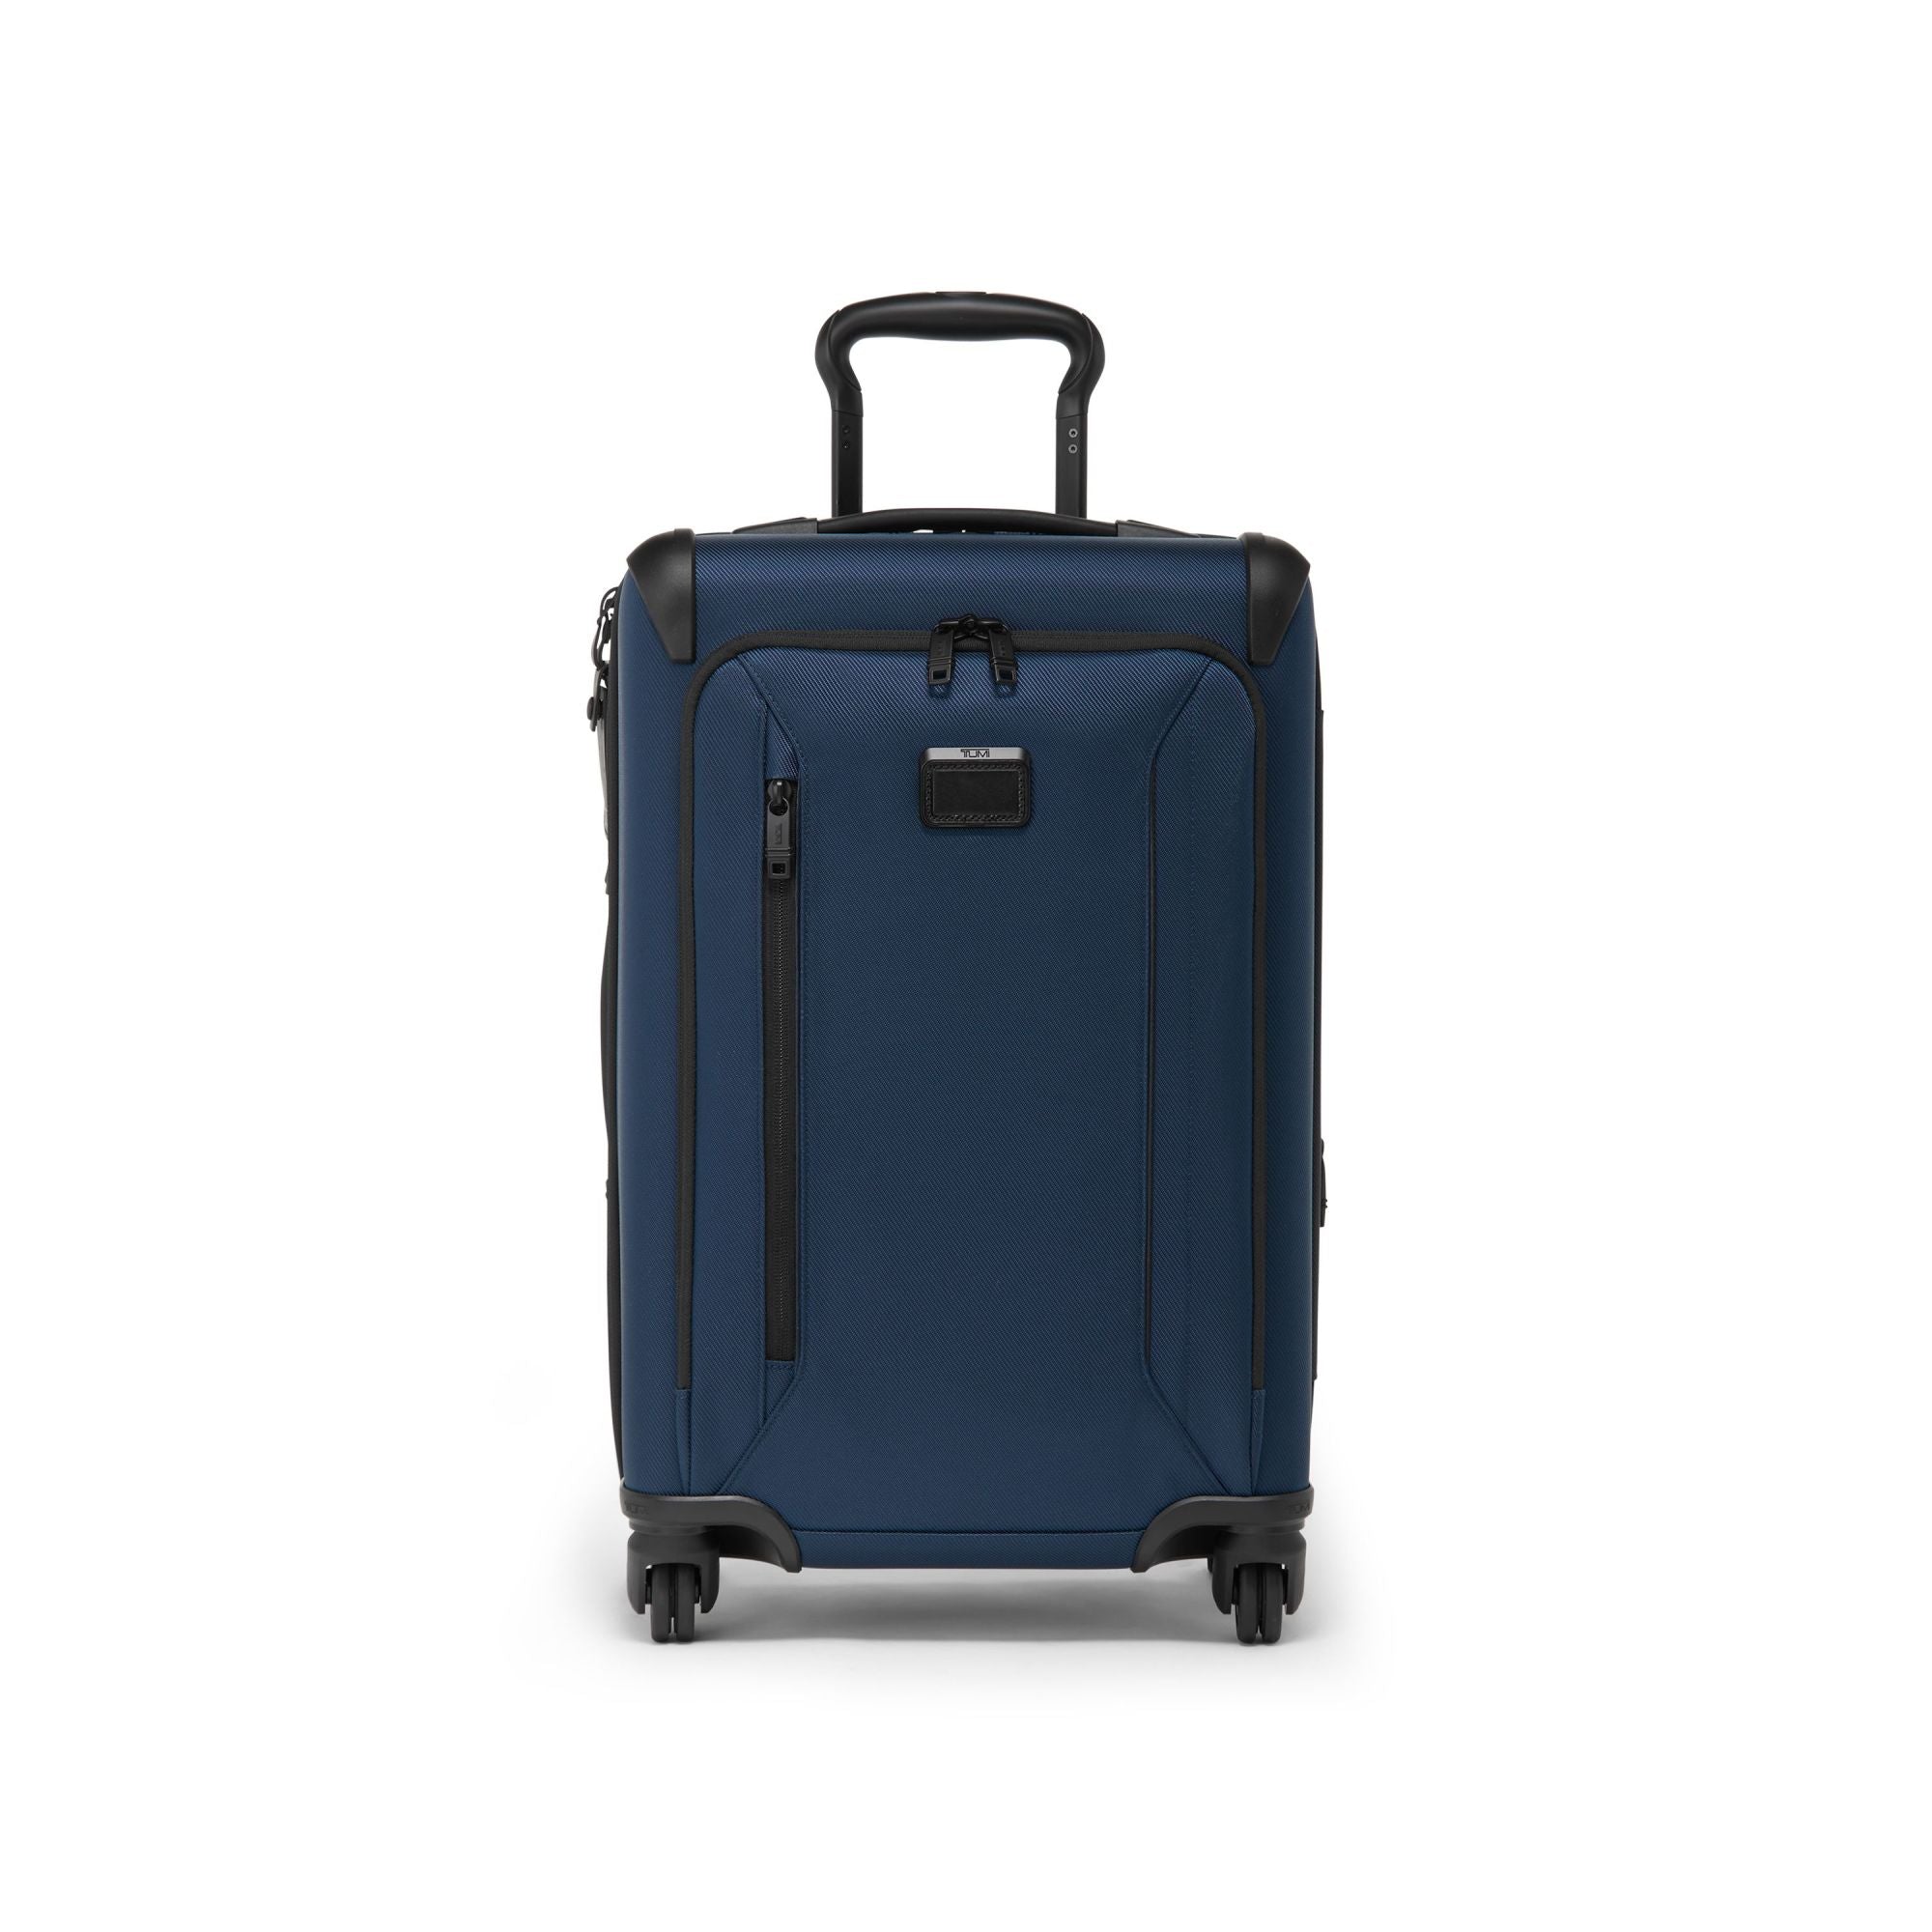 TUMI Aerotour International Expandable 4 Wheeled Carry-On – Luggage Pros